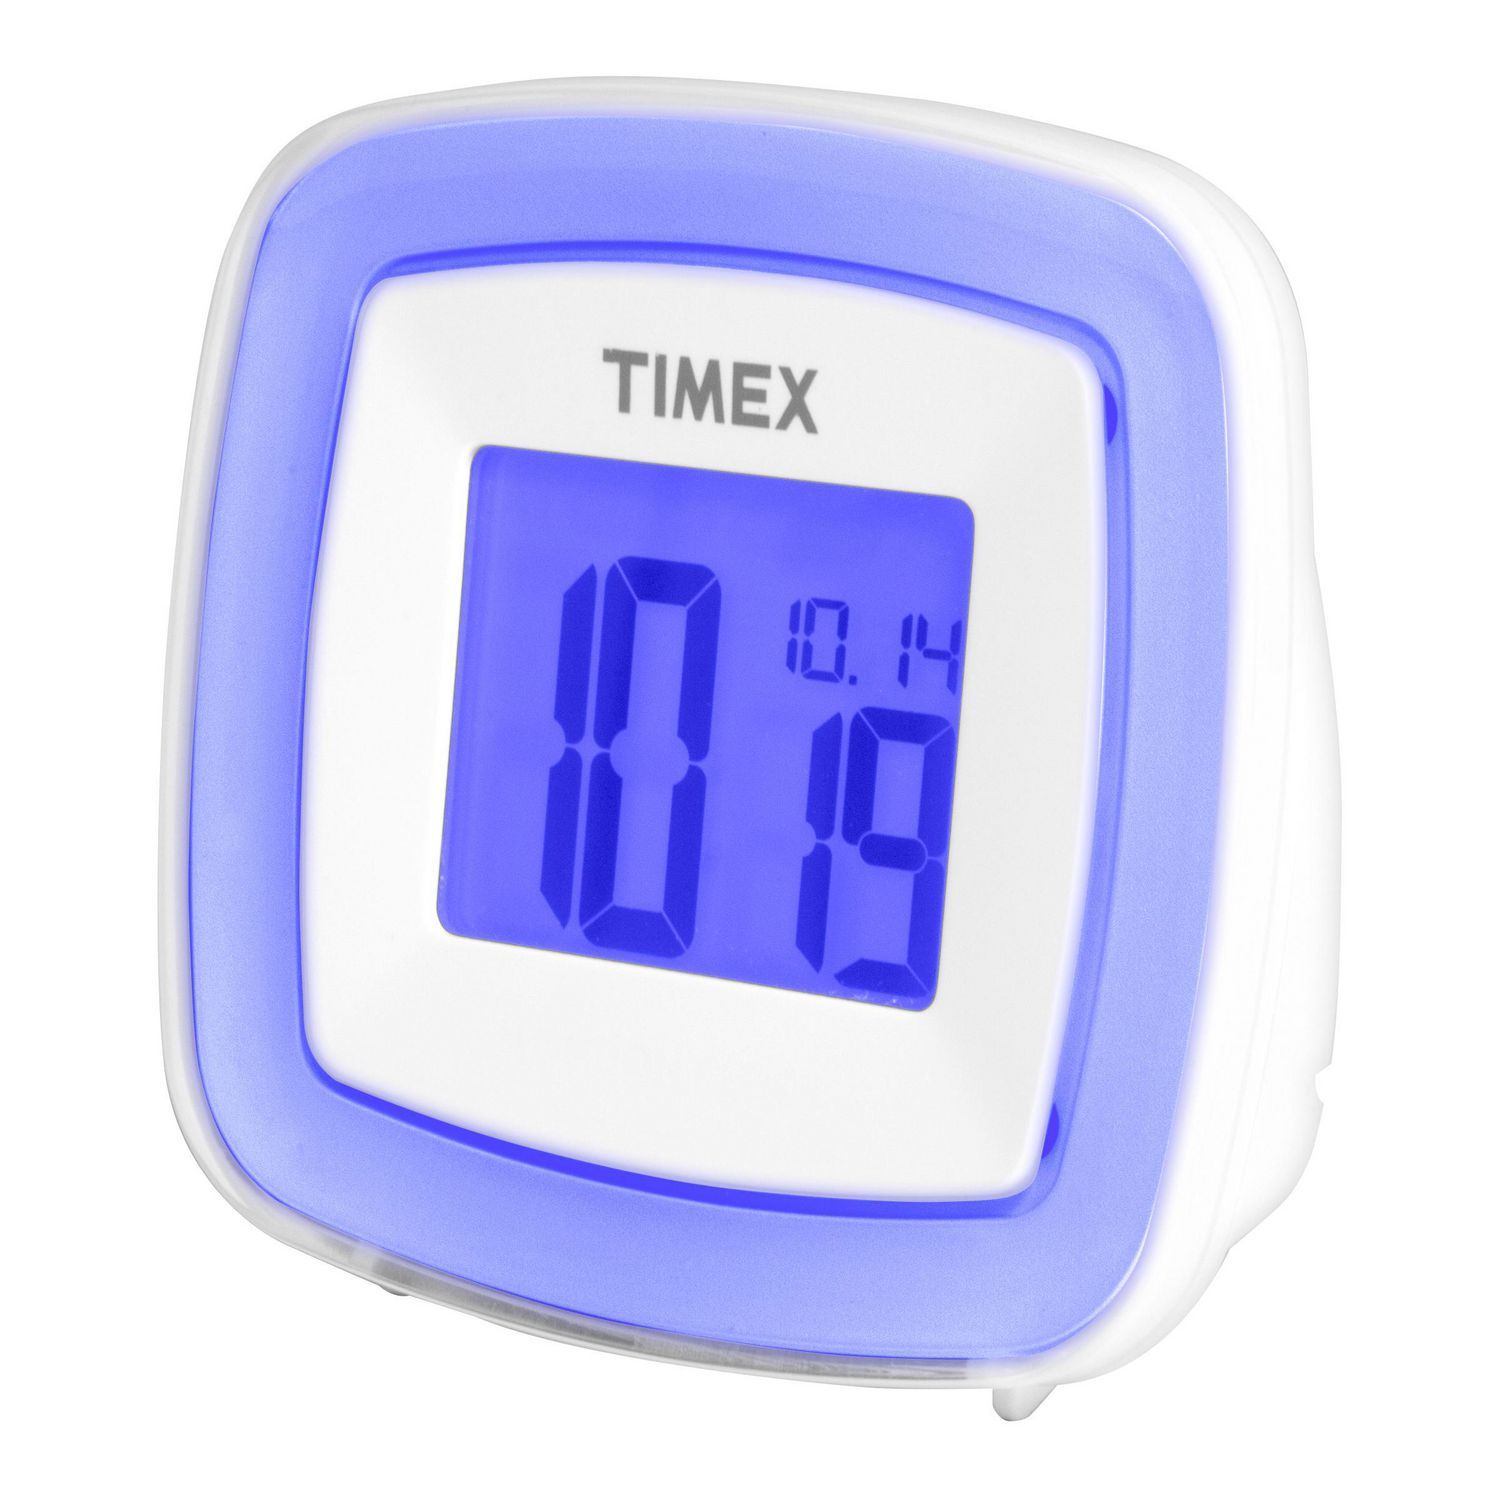 timex alarm clock walmart